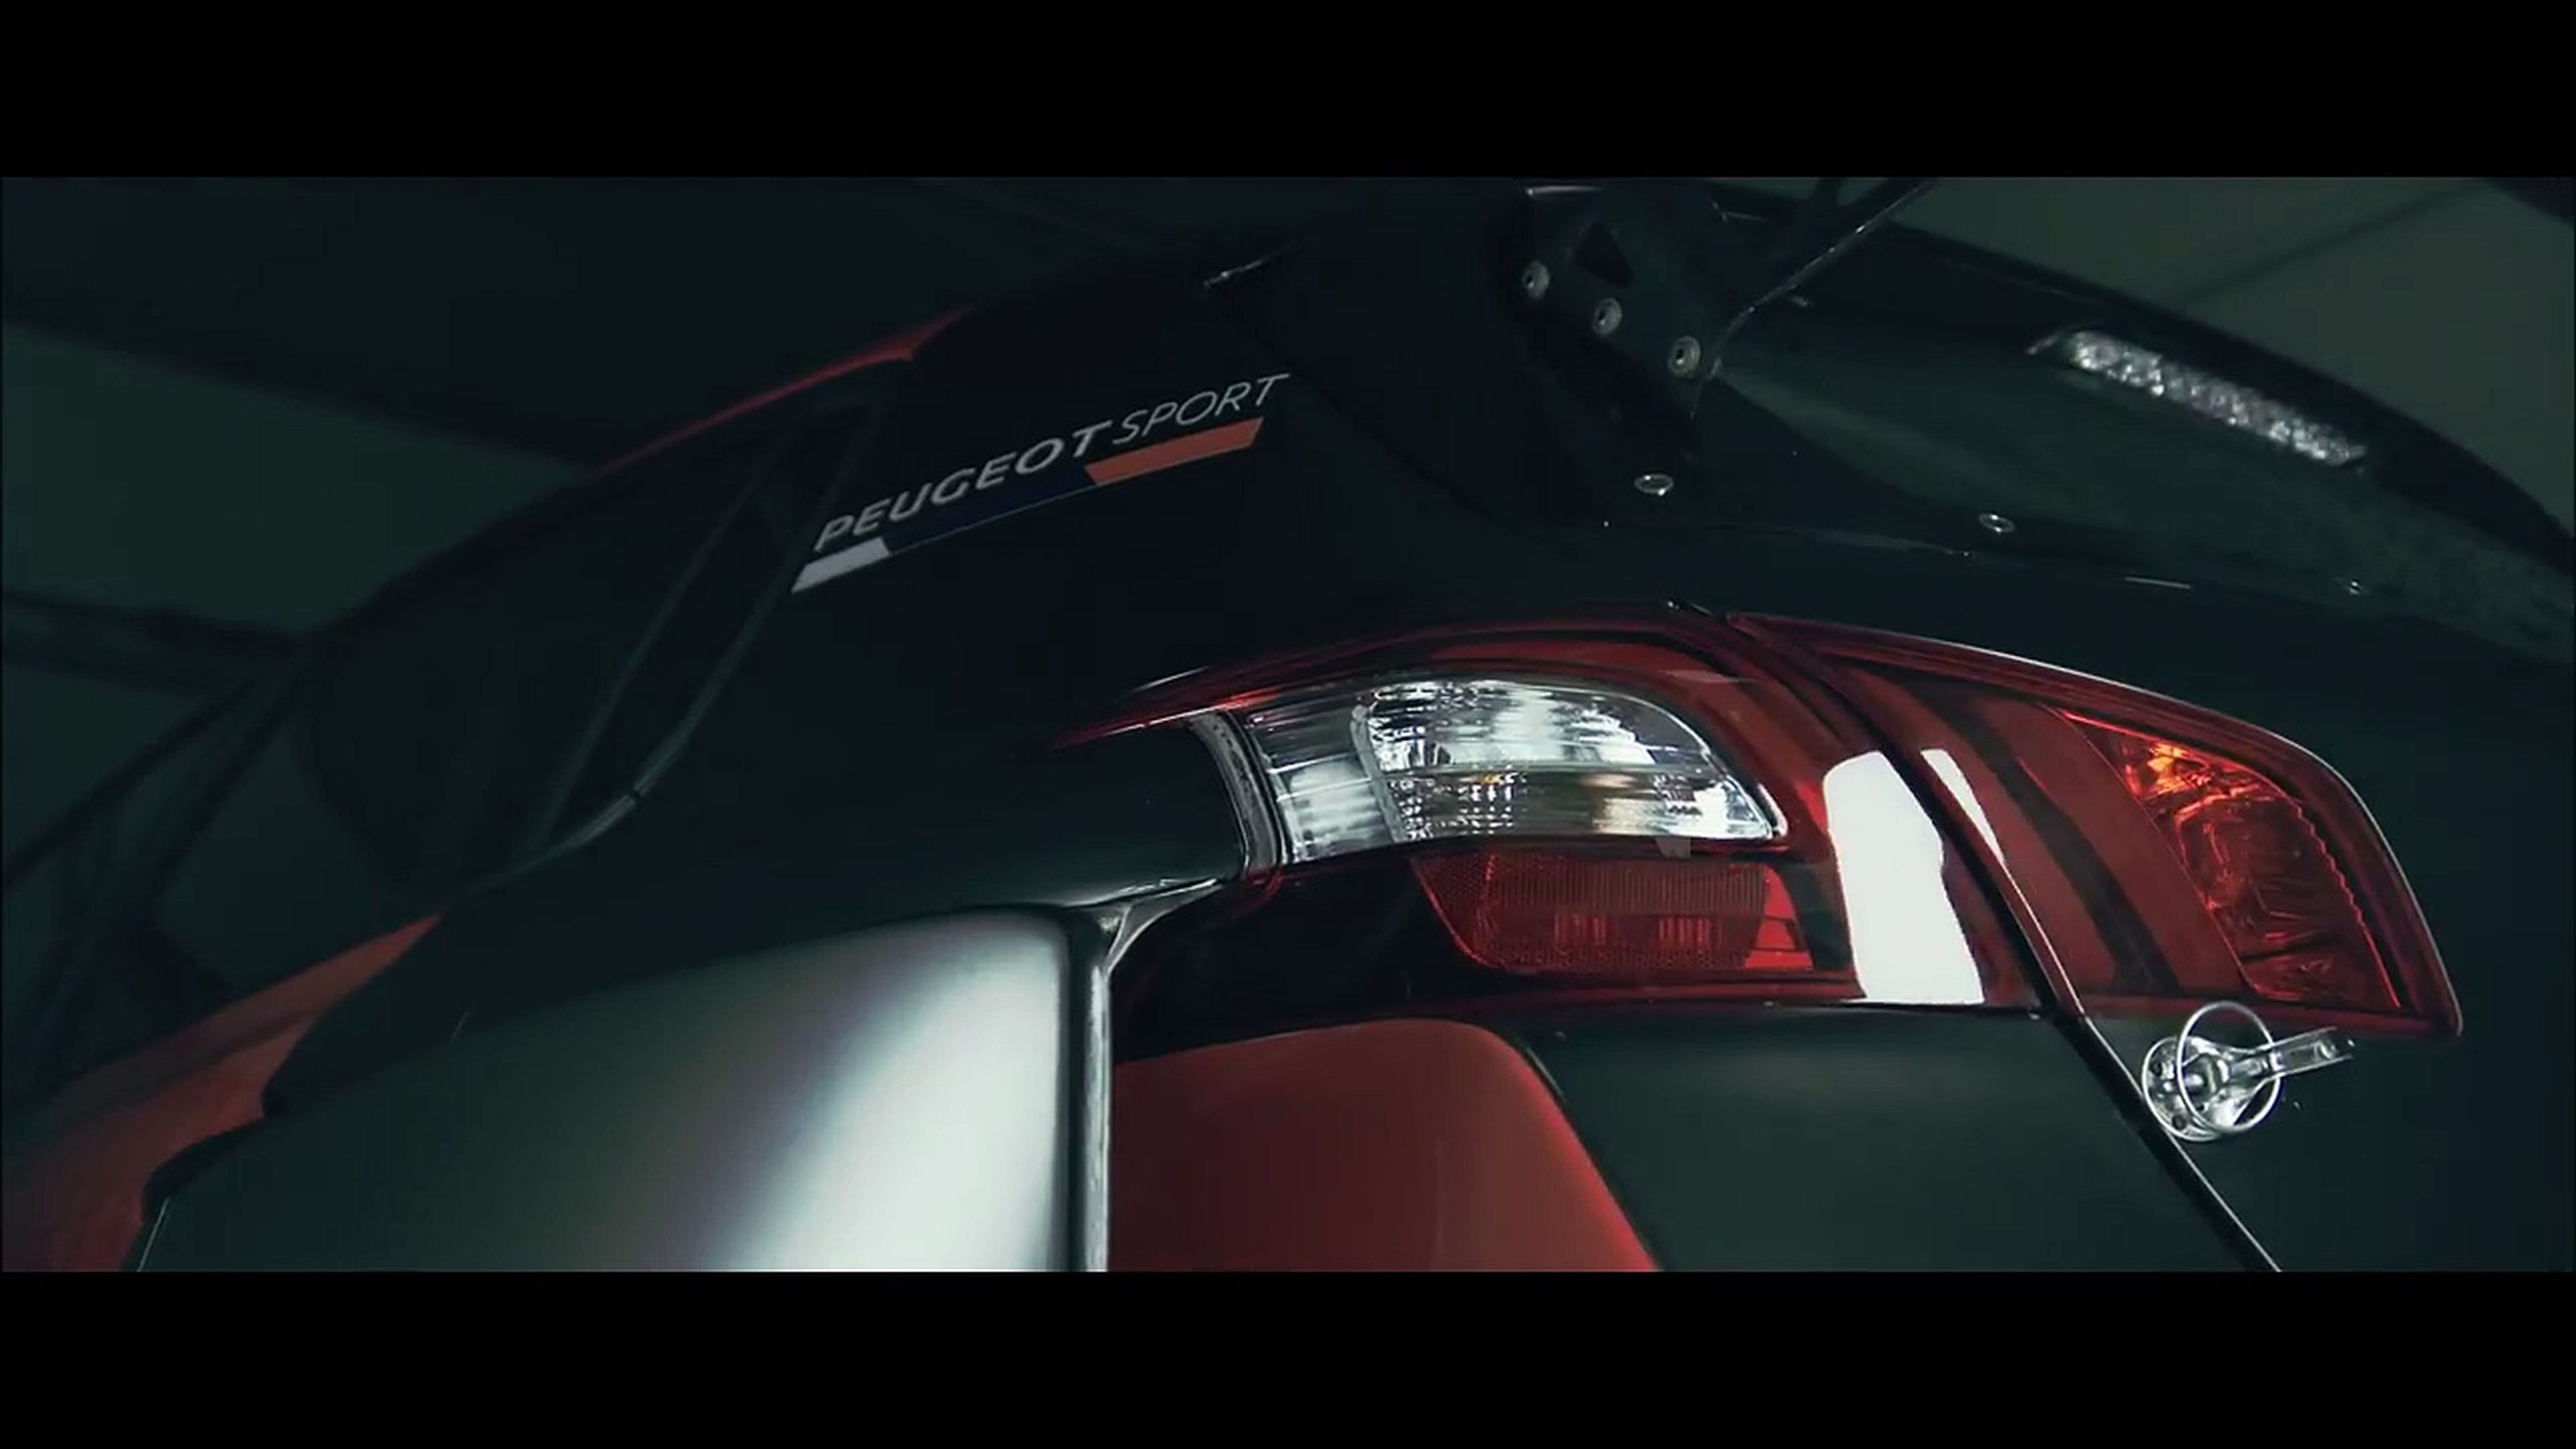 VÍDEO: Peugeot 308 TCR, ¿preparado para acción de la buena? [TG]